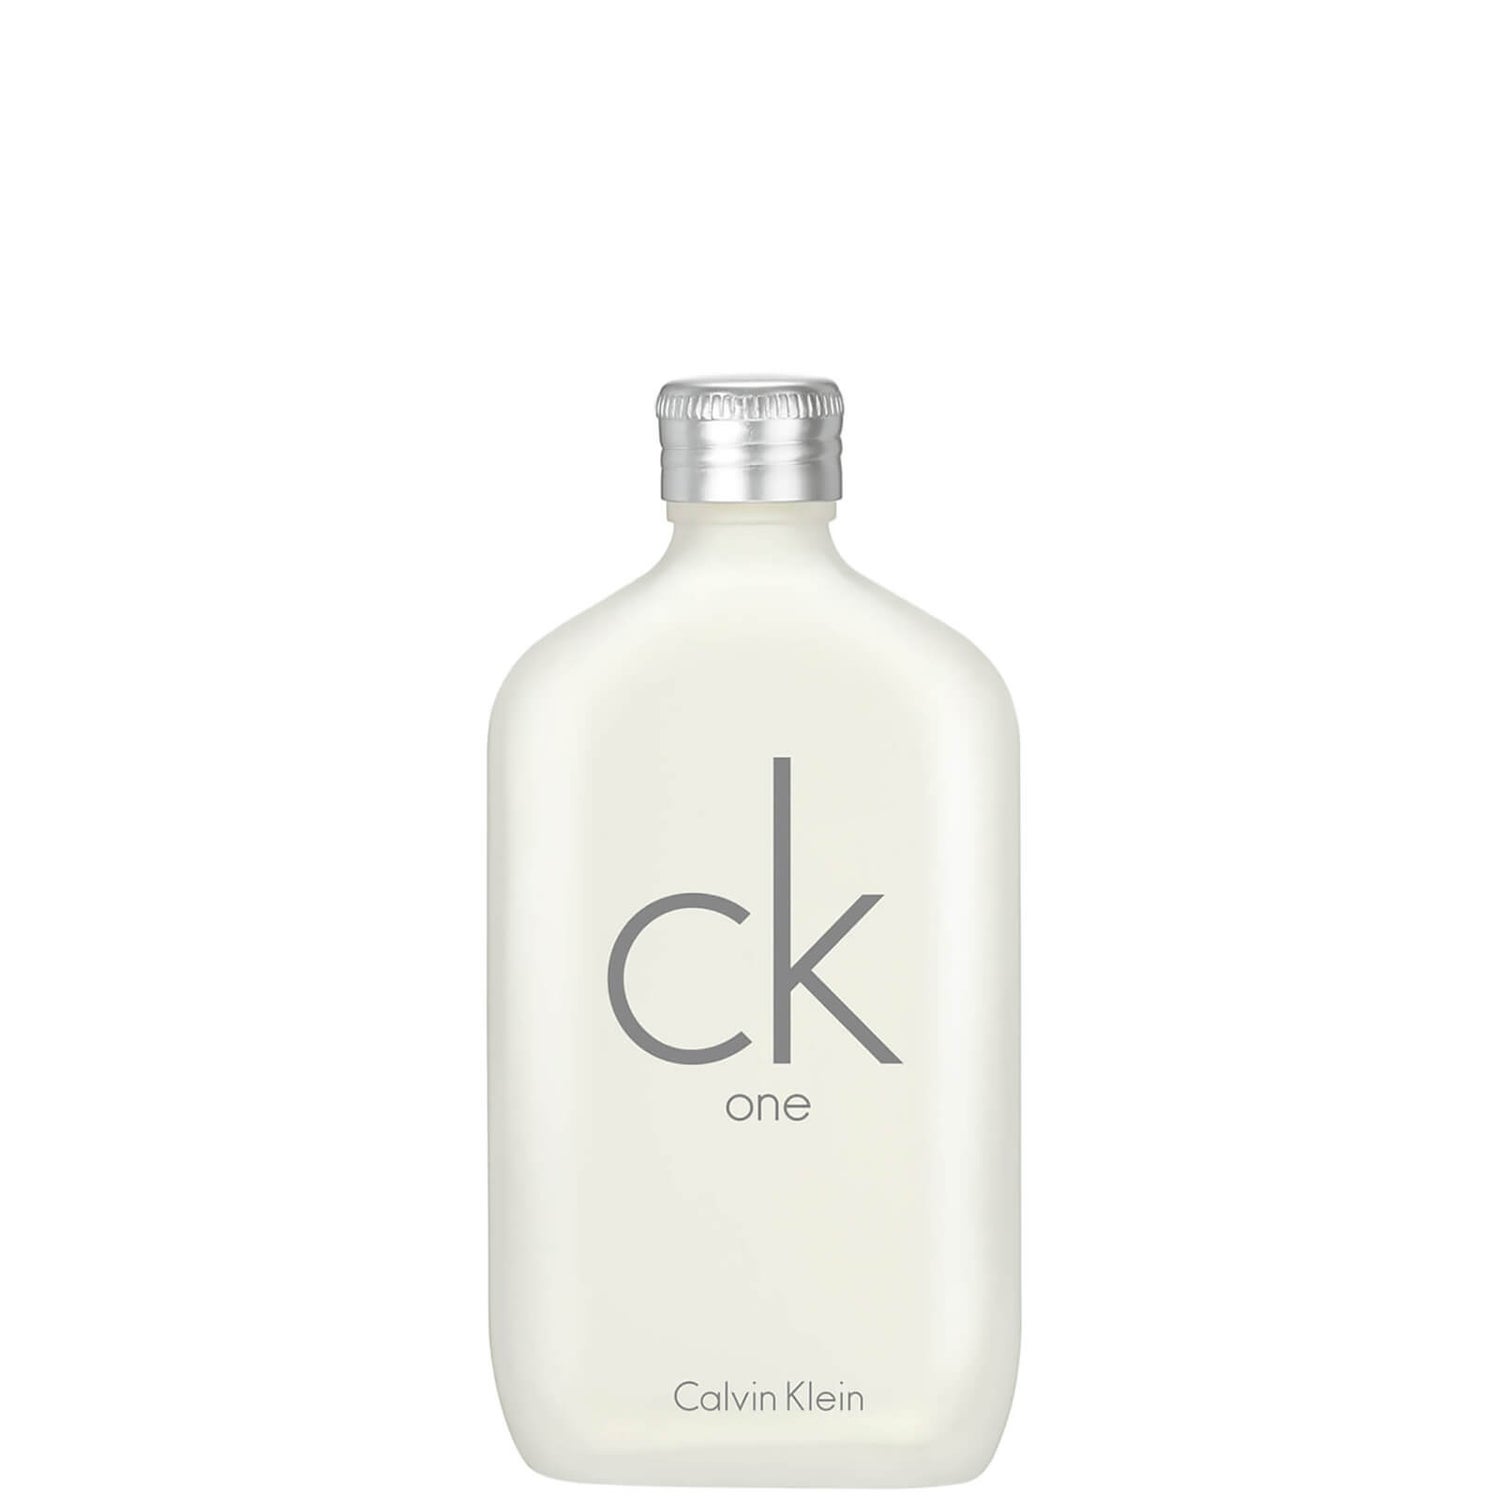 Calvin Klein CK One Eau de Toilette (50ml) - LOOKFANTASTIC